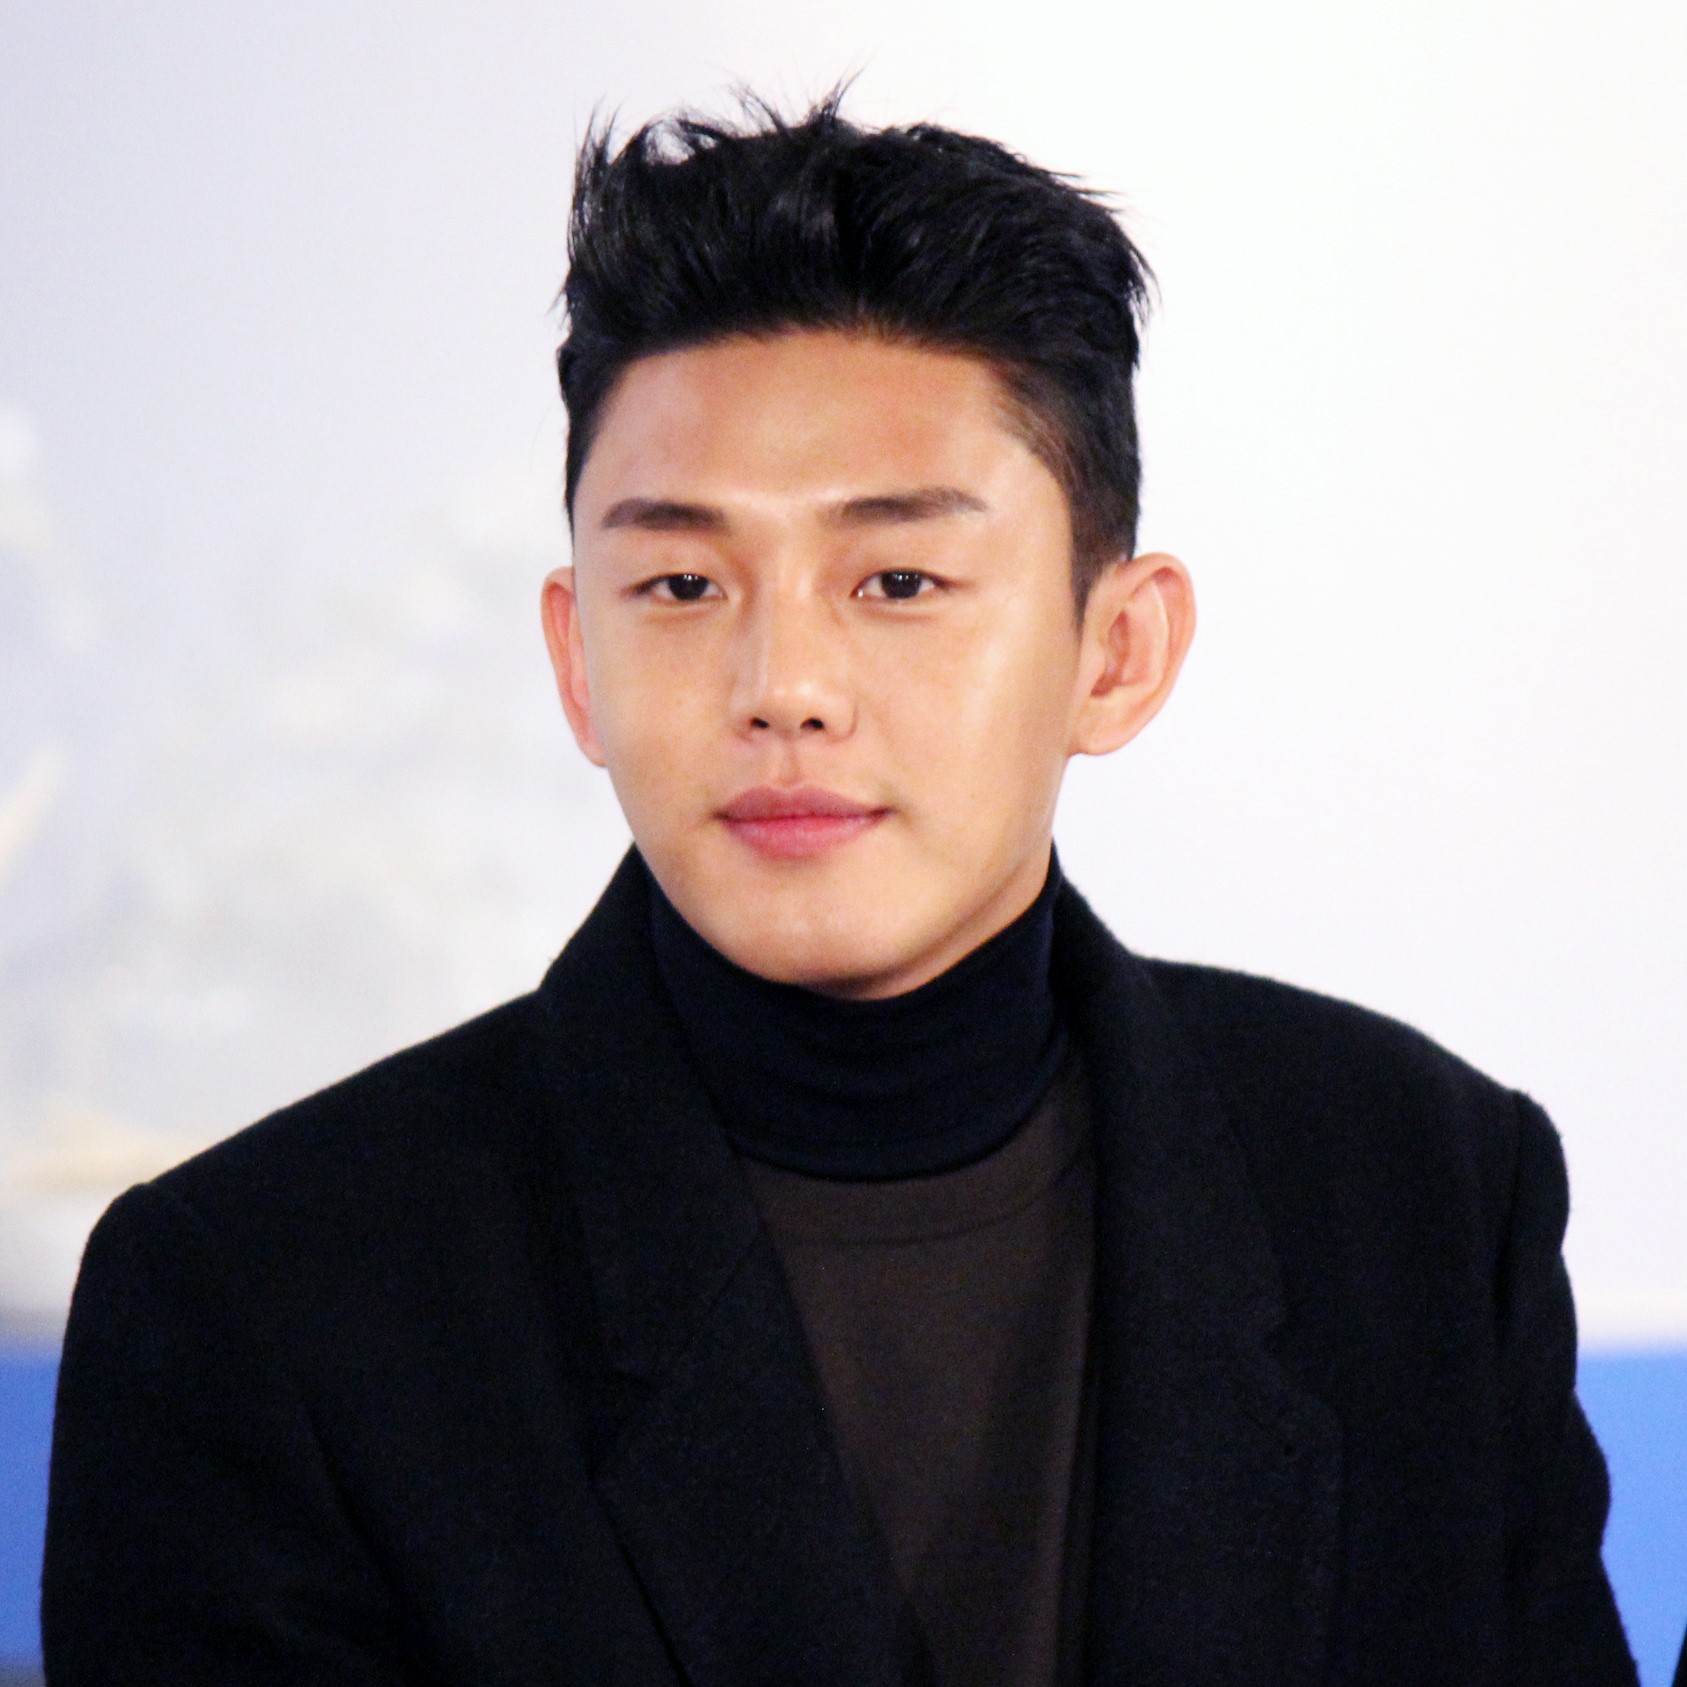 UPDATE 3-South Korean actor found dead in latest K-pop tragedy